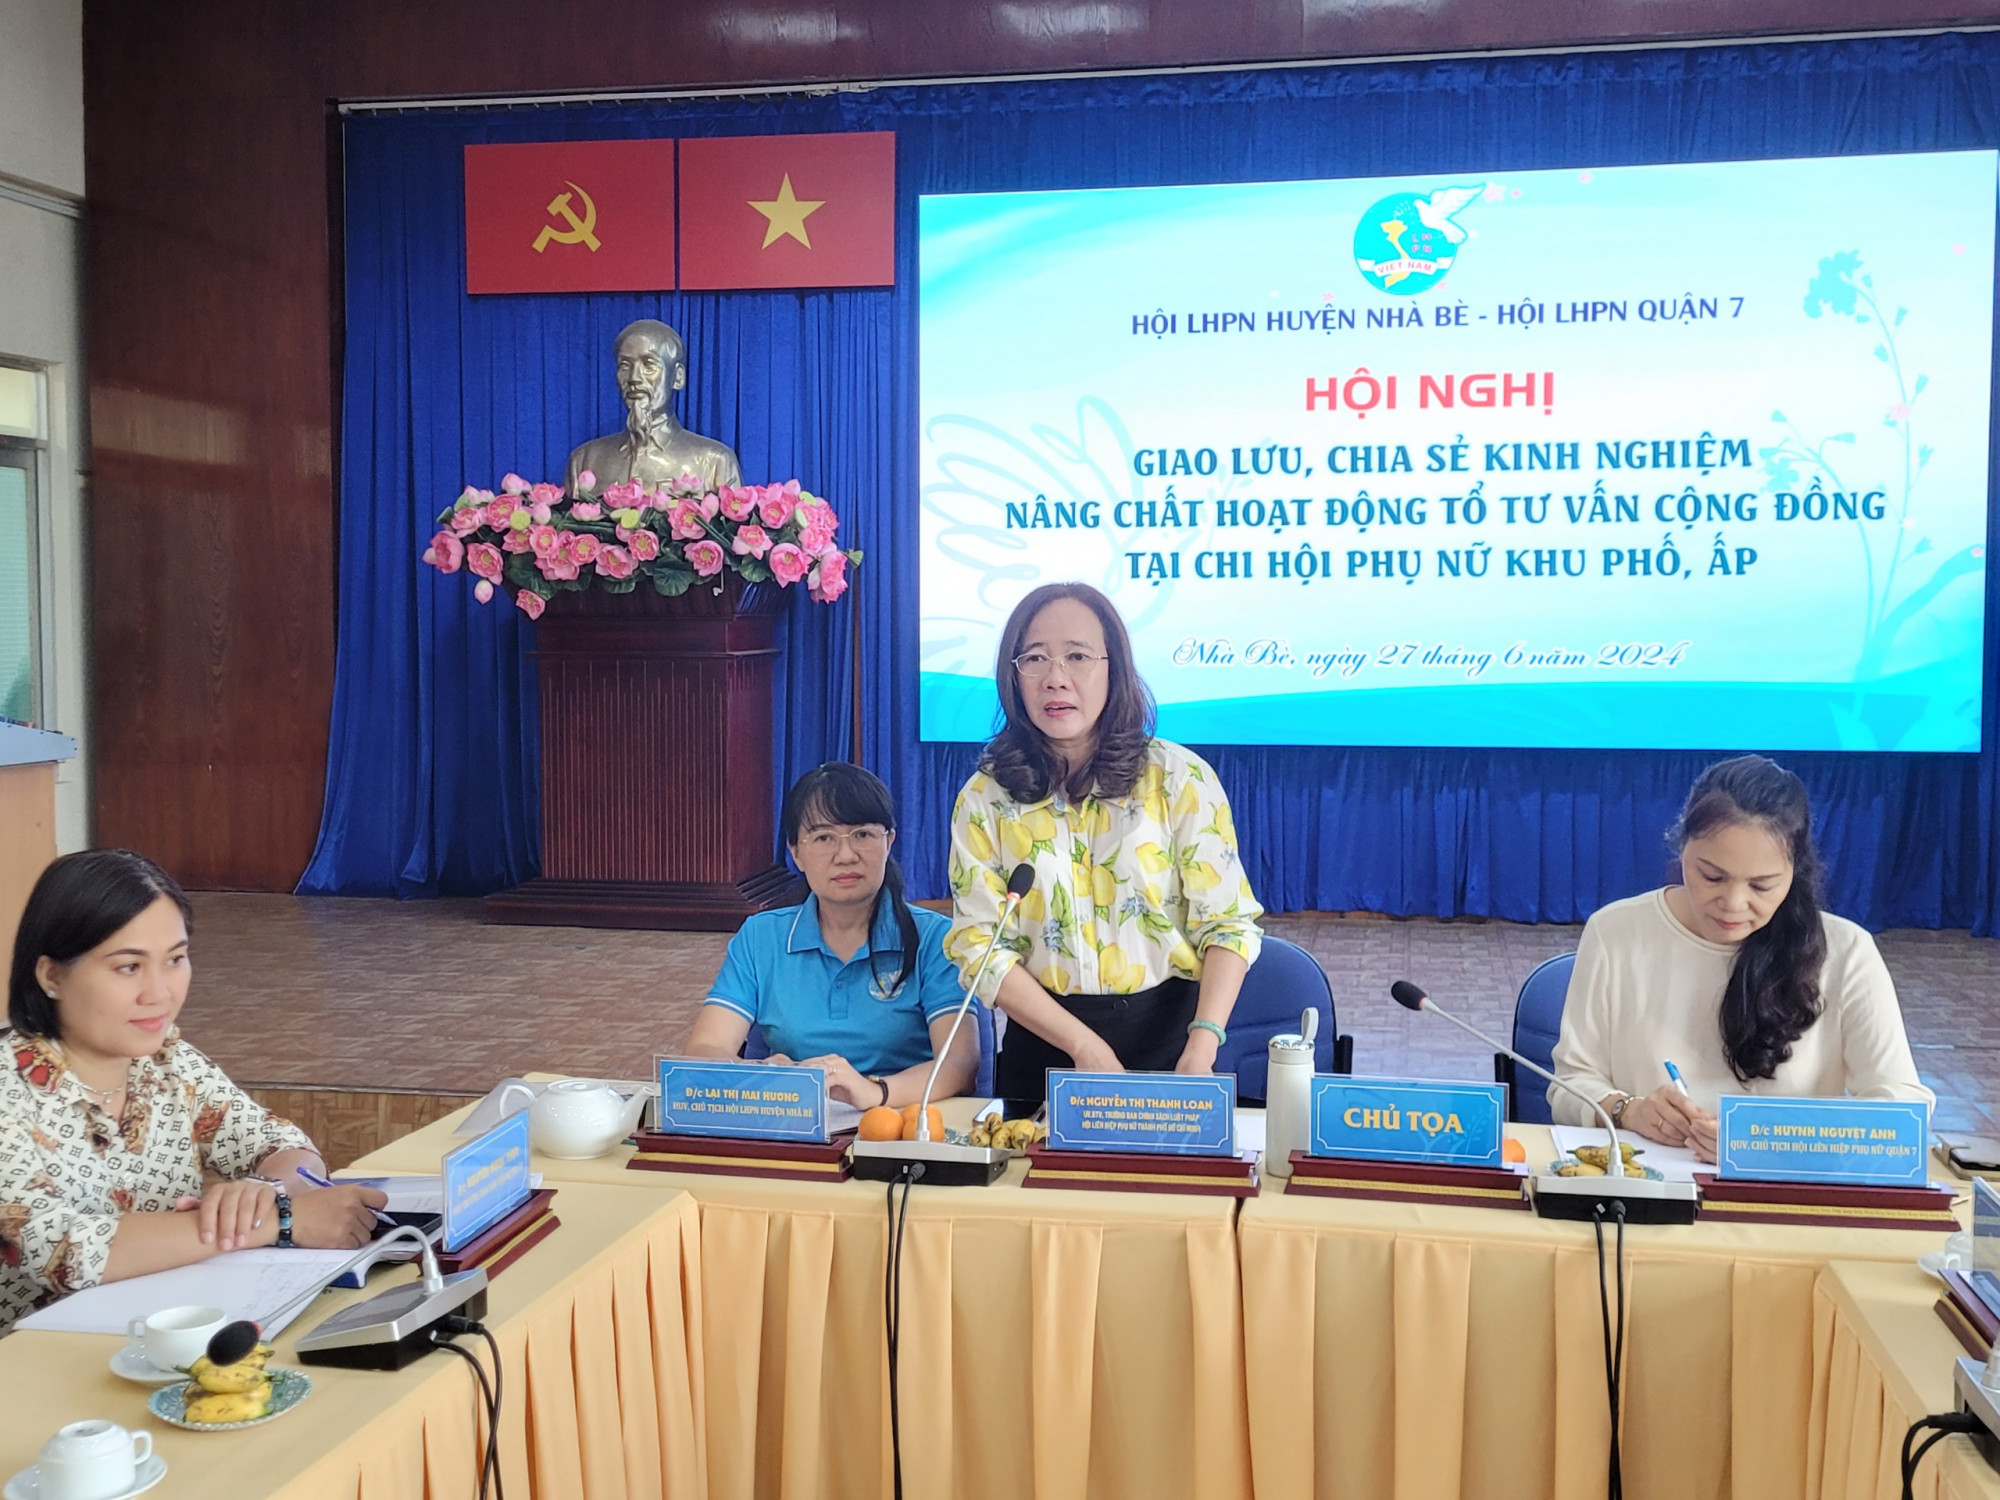 Bà Nguyễn Thị Thanh Loan - Trưởng Ban Chính sách - Luật pháp Hội LHPN TPHCM khẳng định, việc thu hút lực lượng trí thức tham gia TTVCĐ sẽ giúp nâng chất hoạt động mô hình này